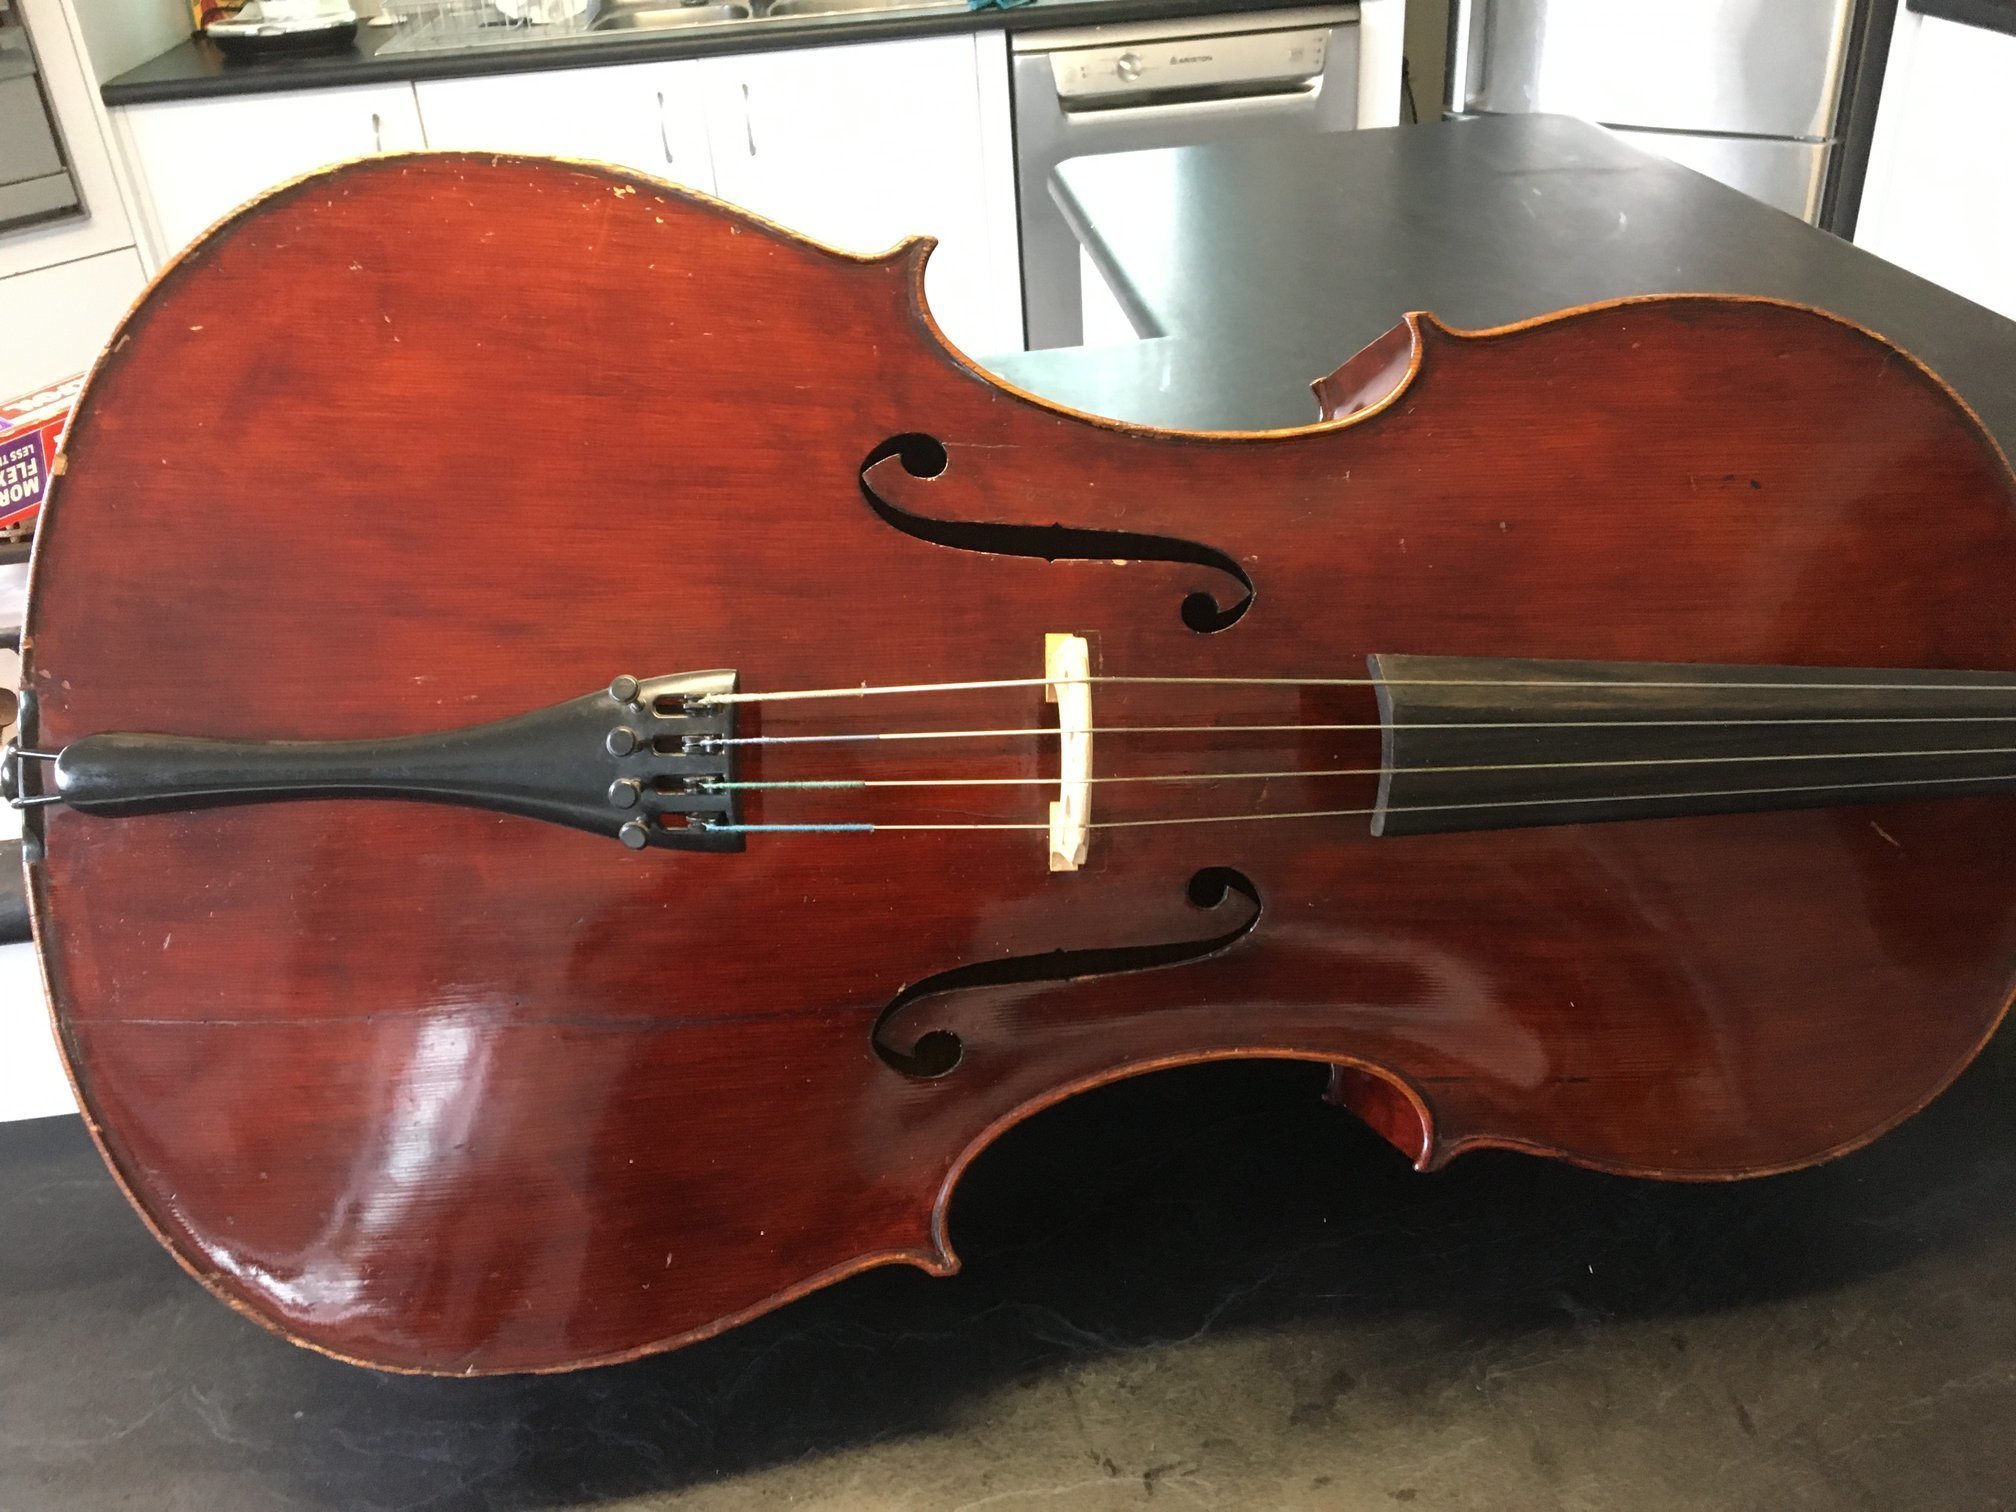 Violin repair